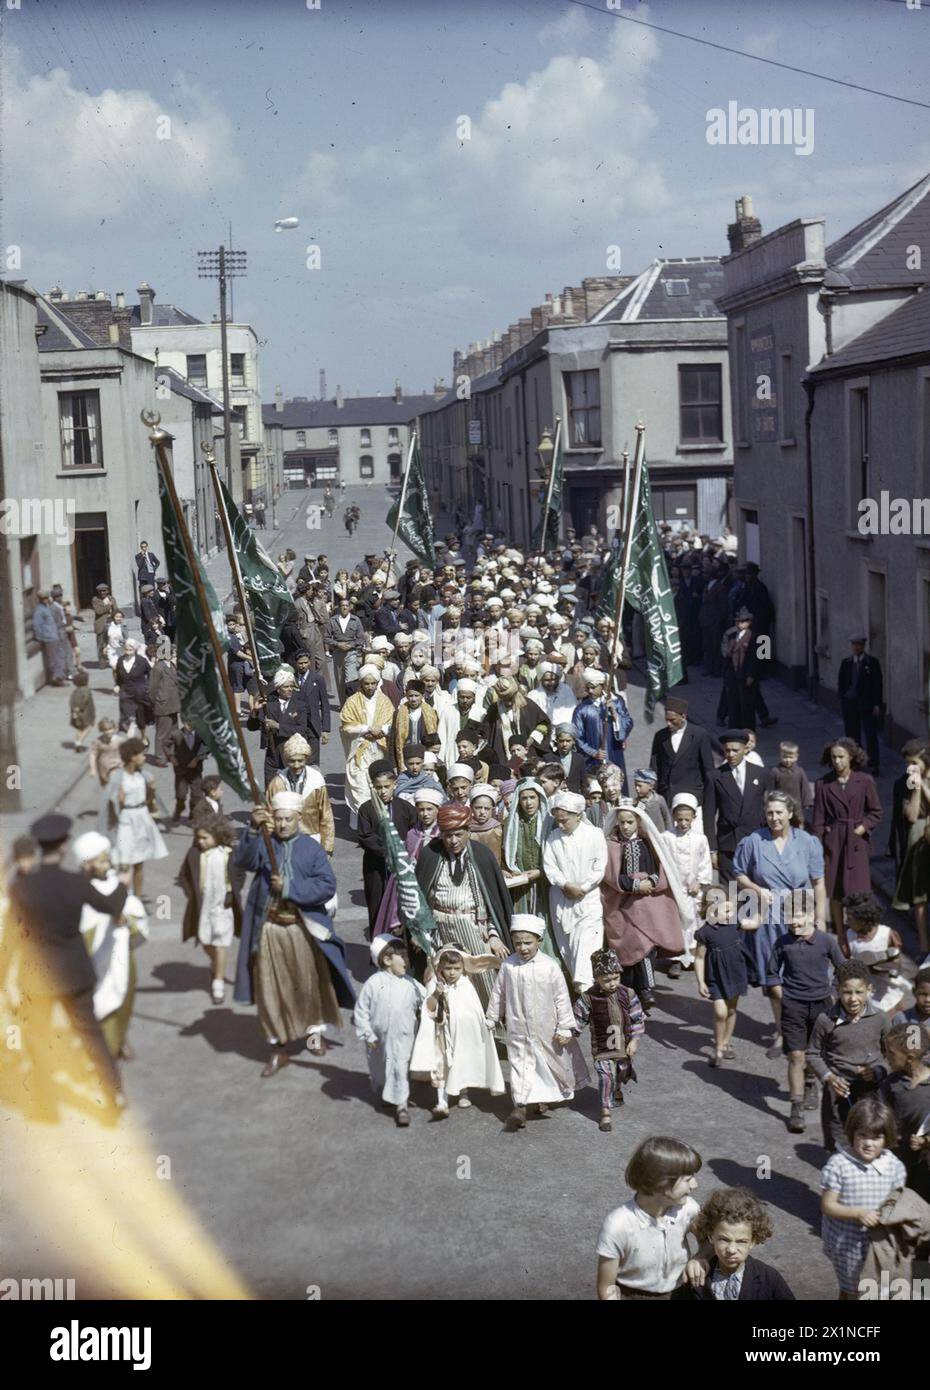 MOSLEMS IN BRITAIN, 1943 - Prozession von Moslems, die durch Butetown zur neuen Moschee und zum Islamischen Kulturzentrum in der Peel Street, Cardiff, fahren. Stockfoto